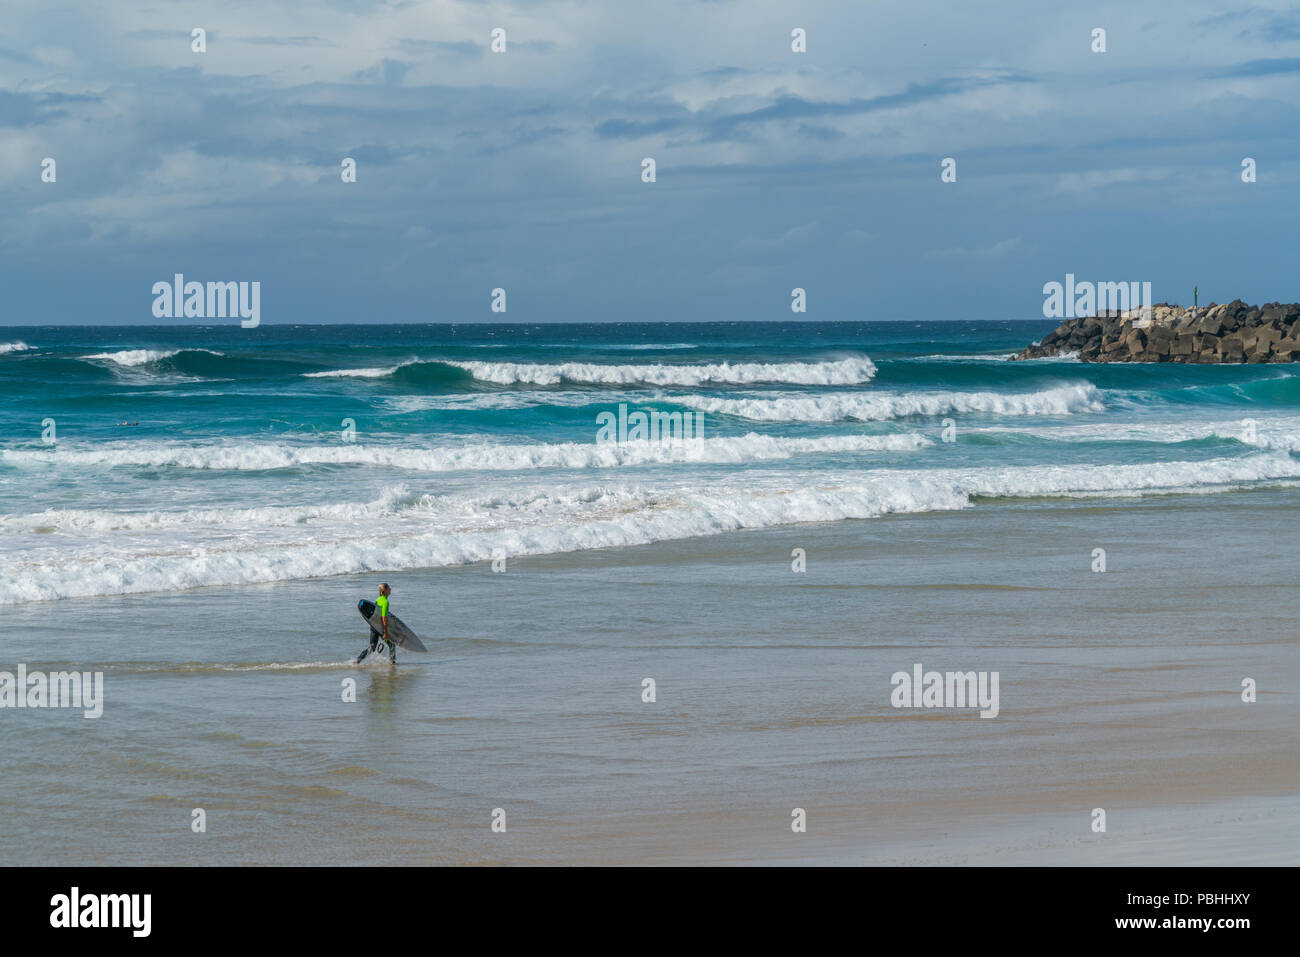 COOLANGATTA, AUSTRALIEN - 10 Juli 2018; Breite Surf Beach mit Surfer, Surfbrett am Strand vor der Brandung Stockfoto